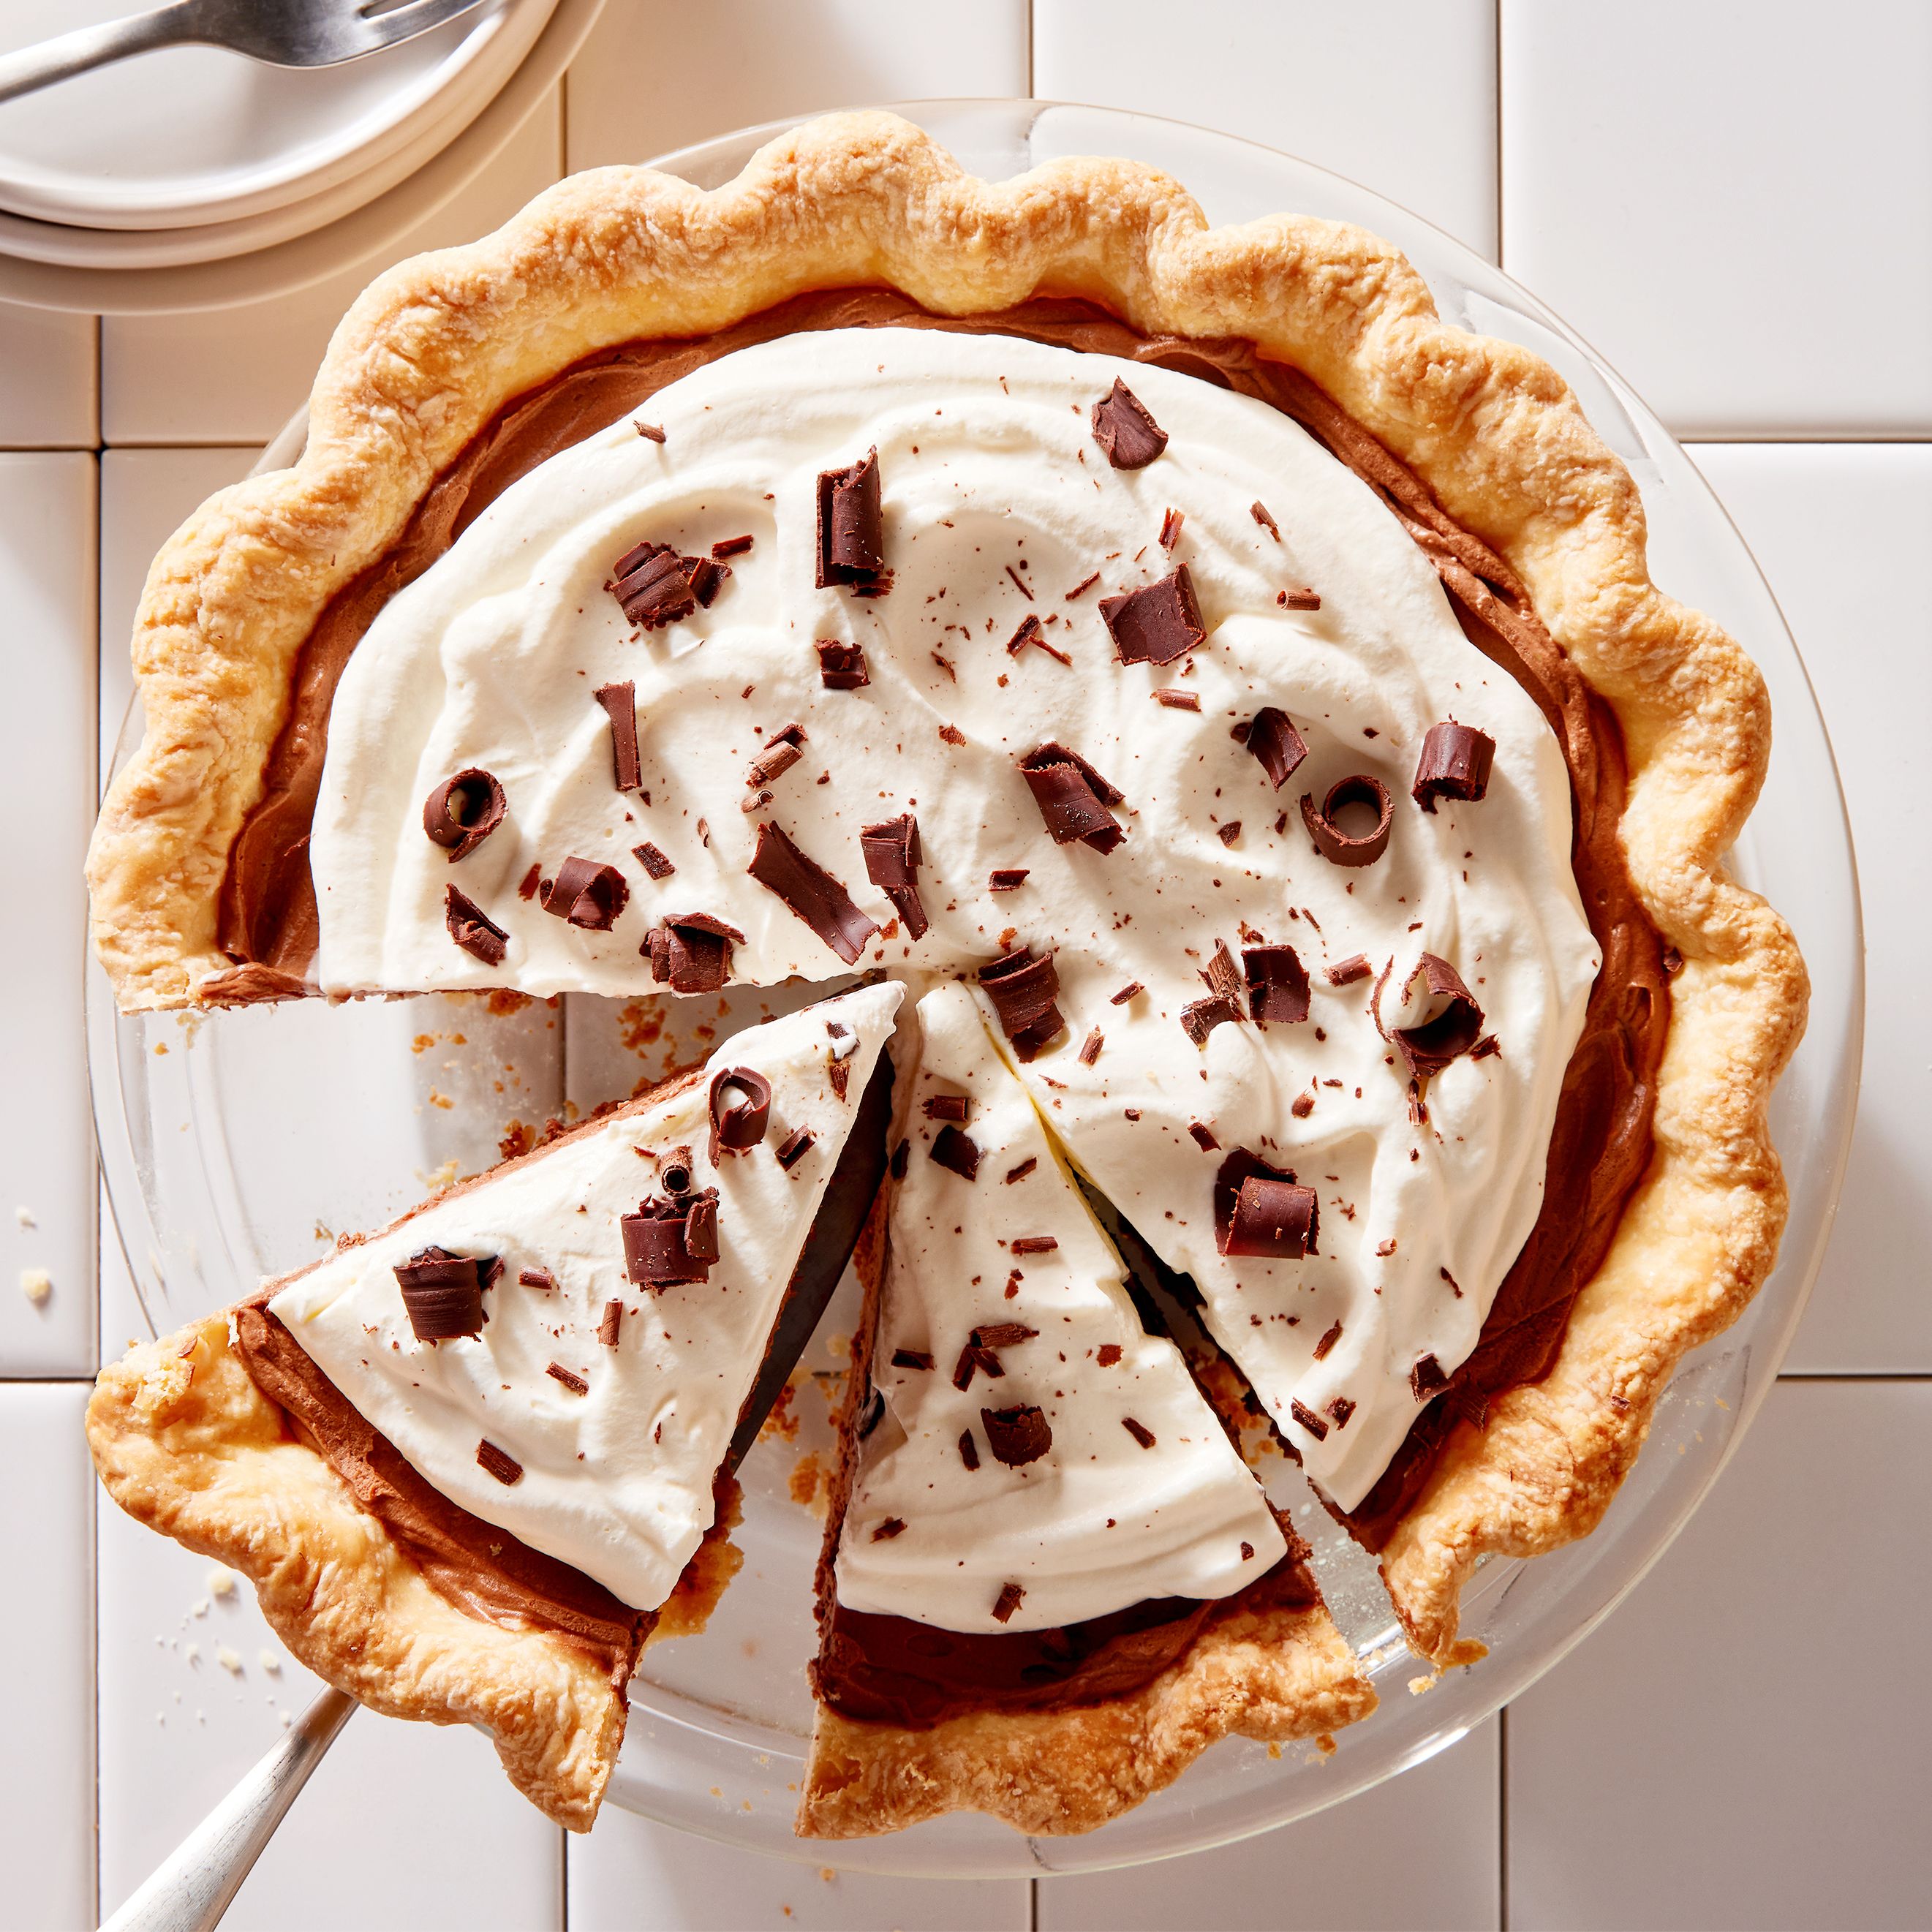 Chocolate Cream Cheese Pie Recipe: How to Make It